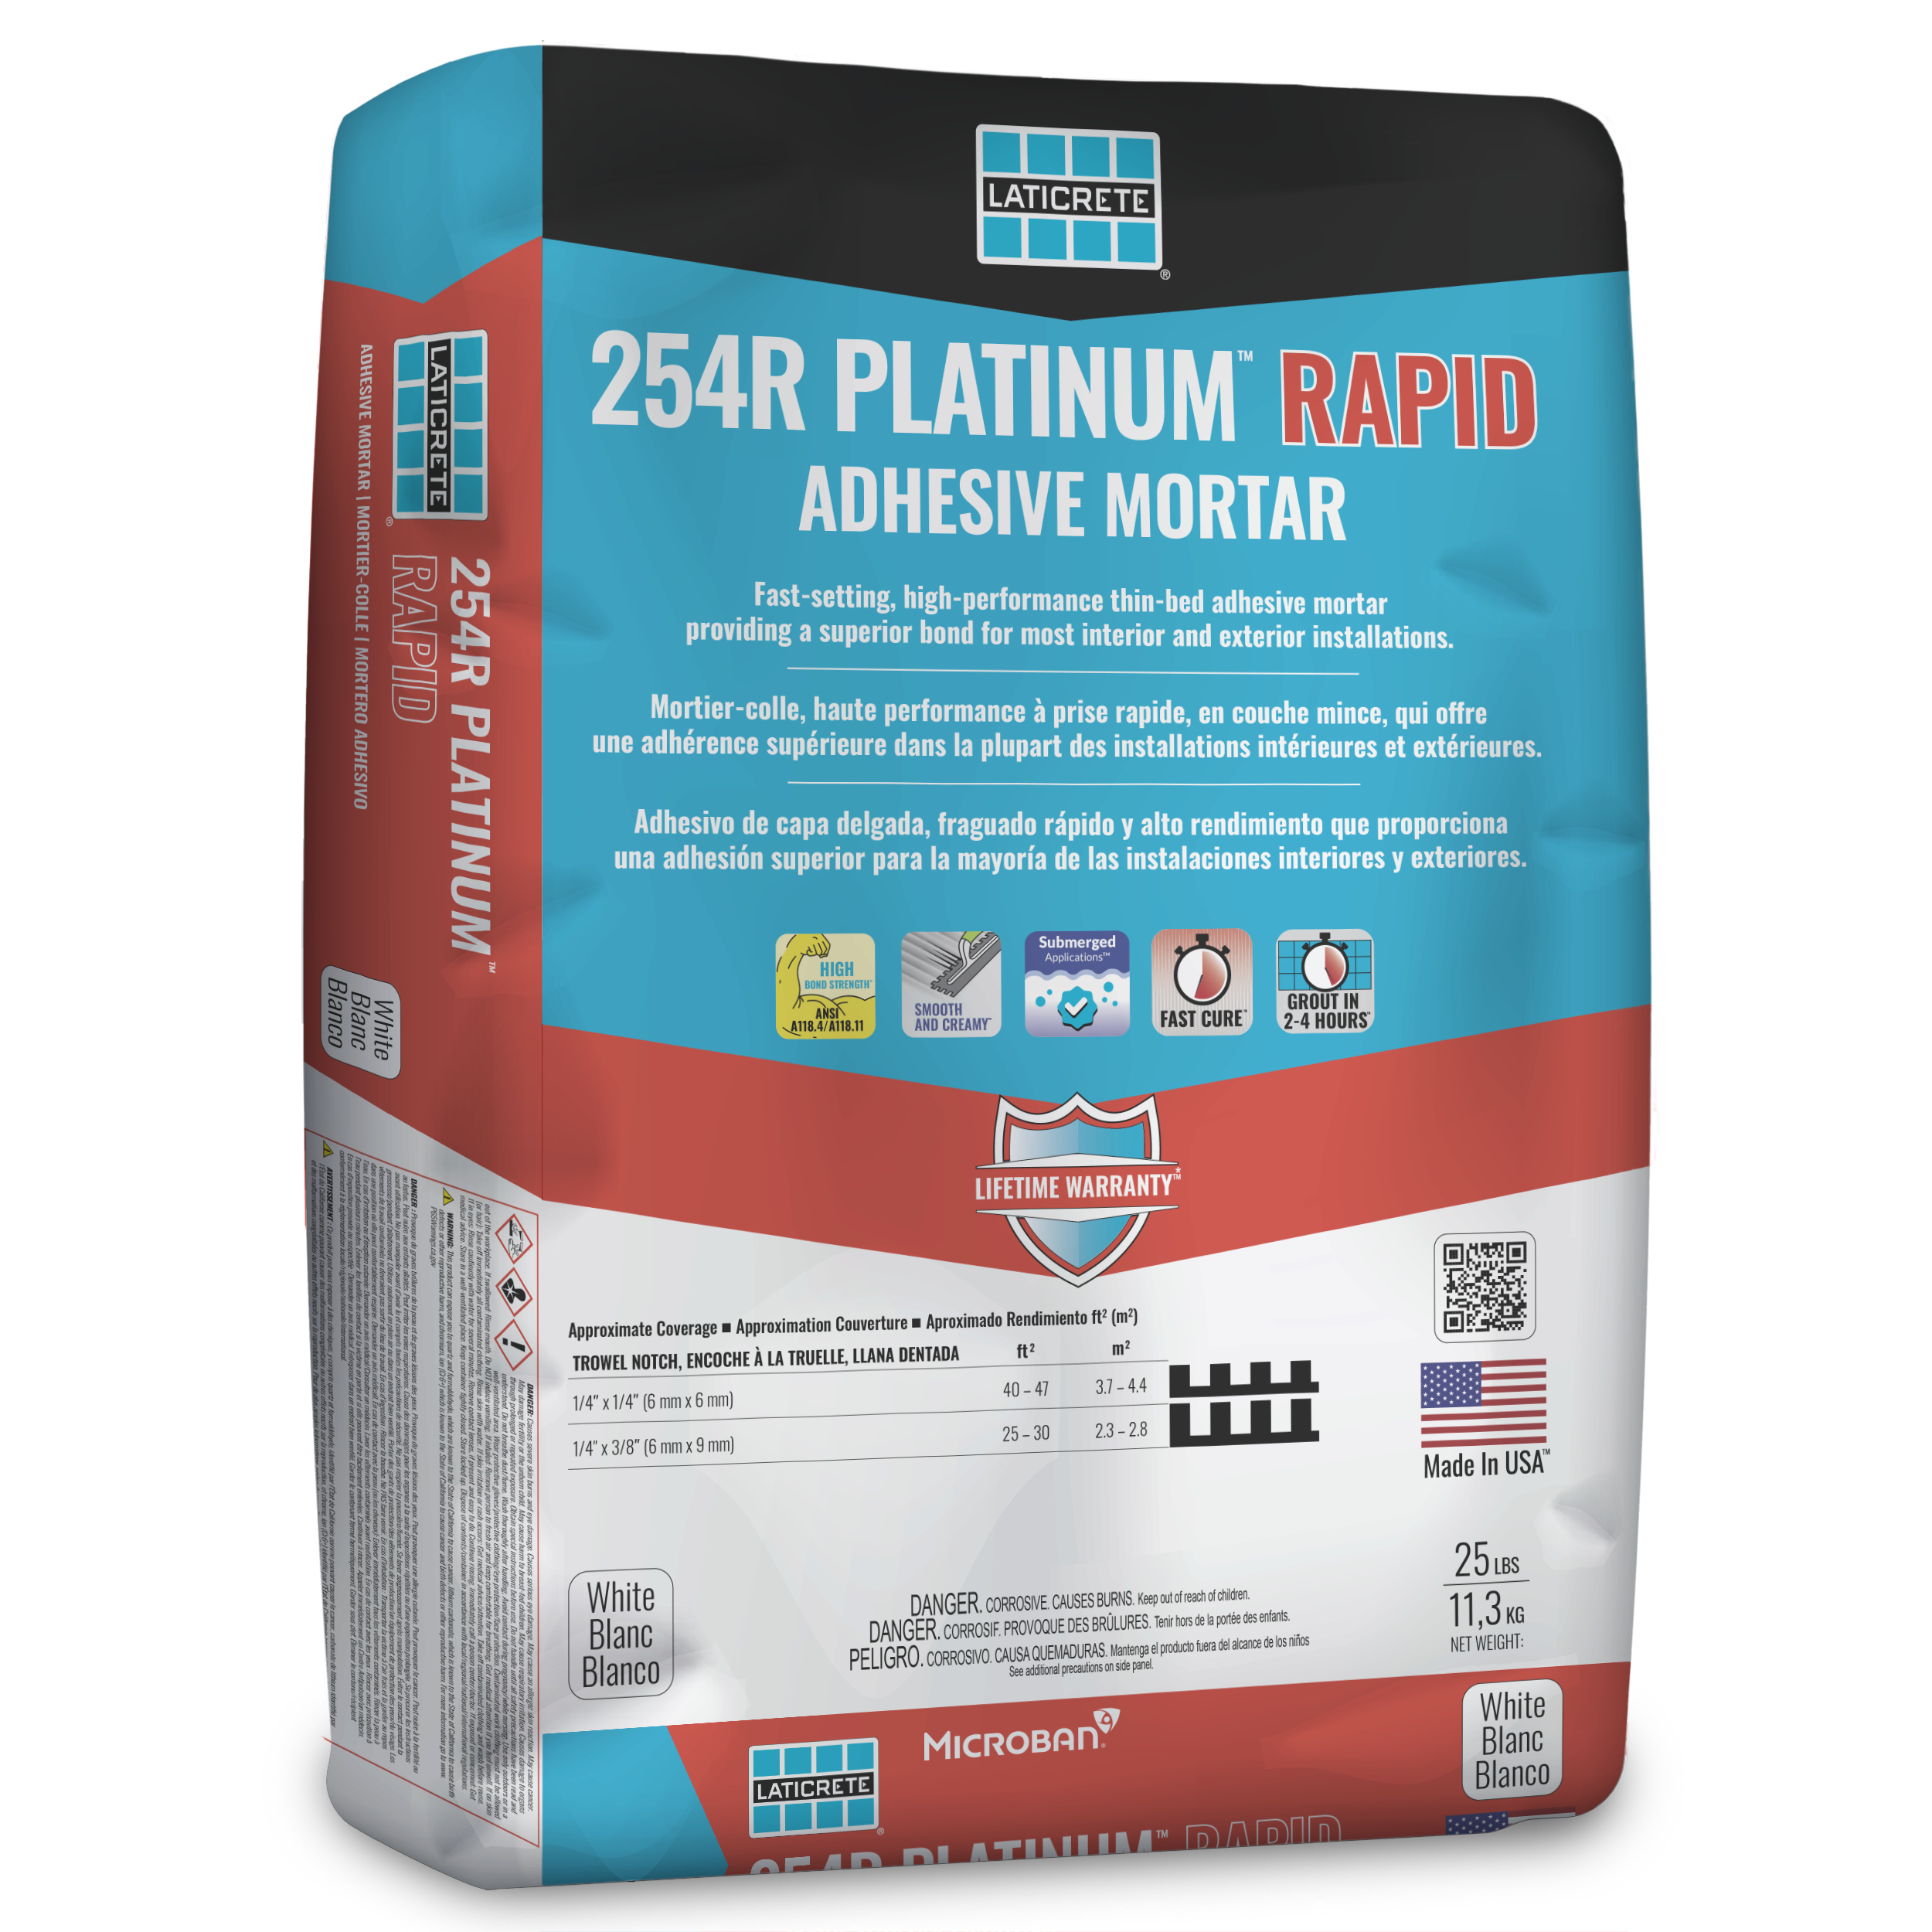 254R PLATINUM™ Rapid